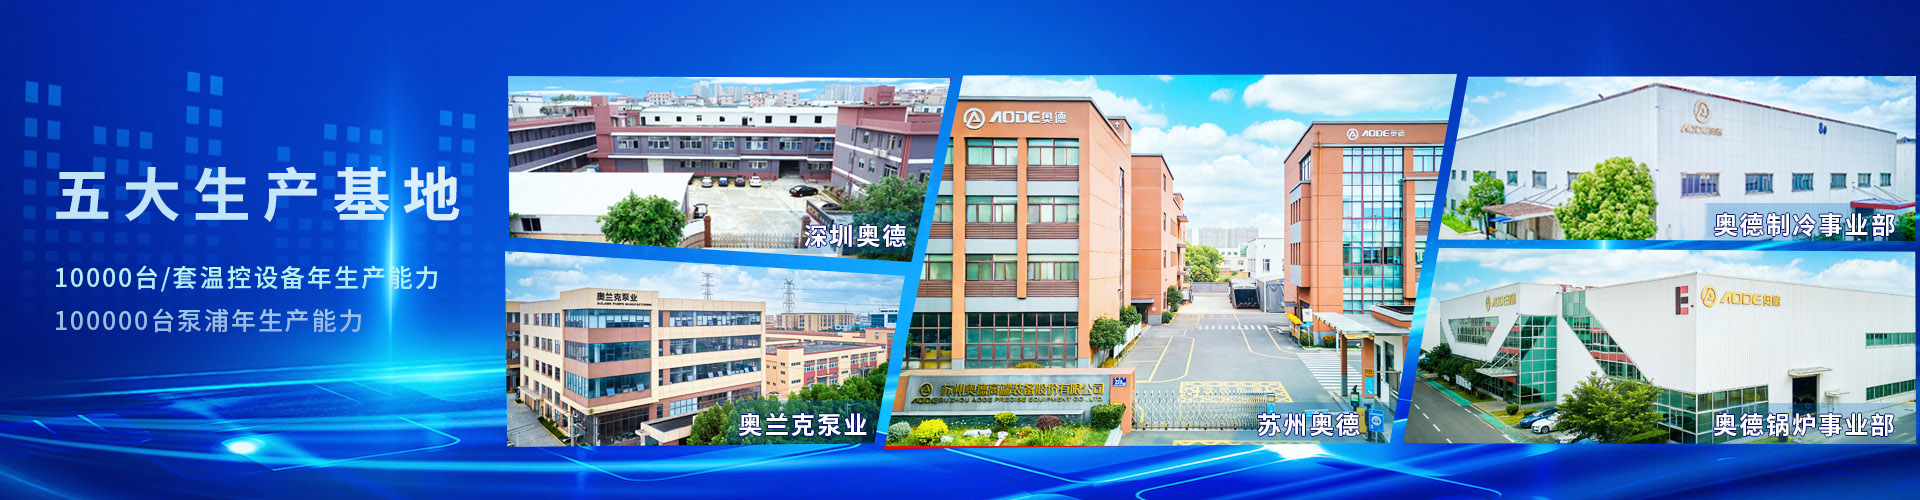 深圳市奧德機械有限公司五大生產基地-專注高端工業溫度控制